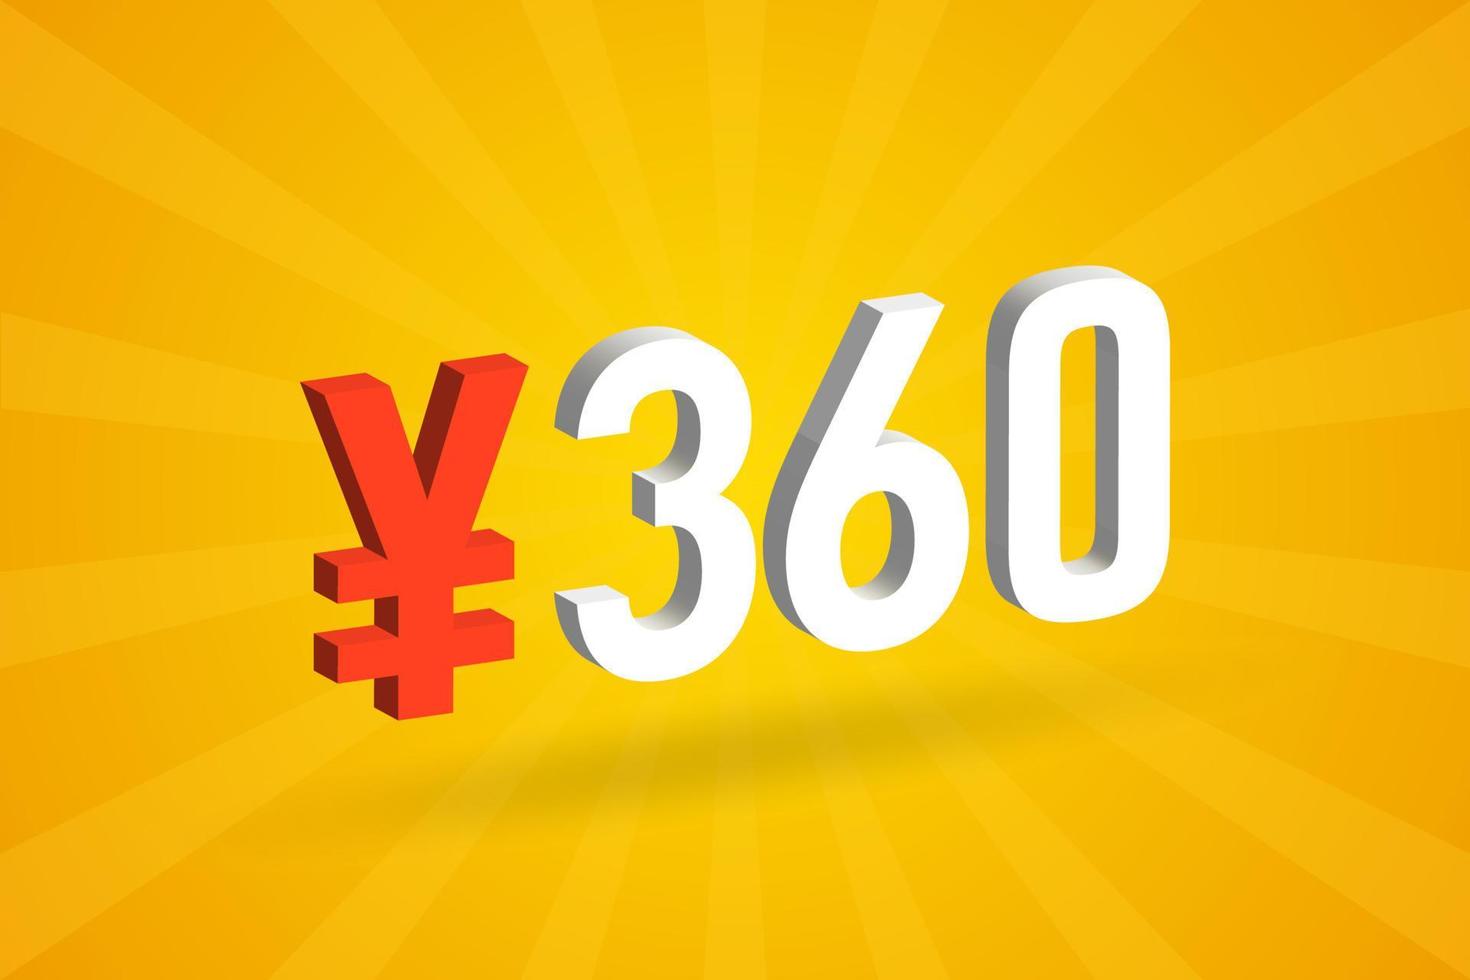 360 yuan Chinese valuta vector tekst symbool. 360 yen Japans valuta geld voorraad vector